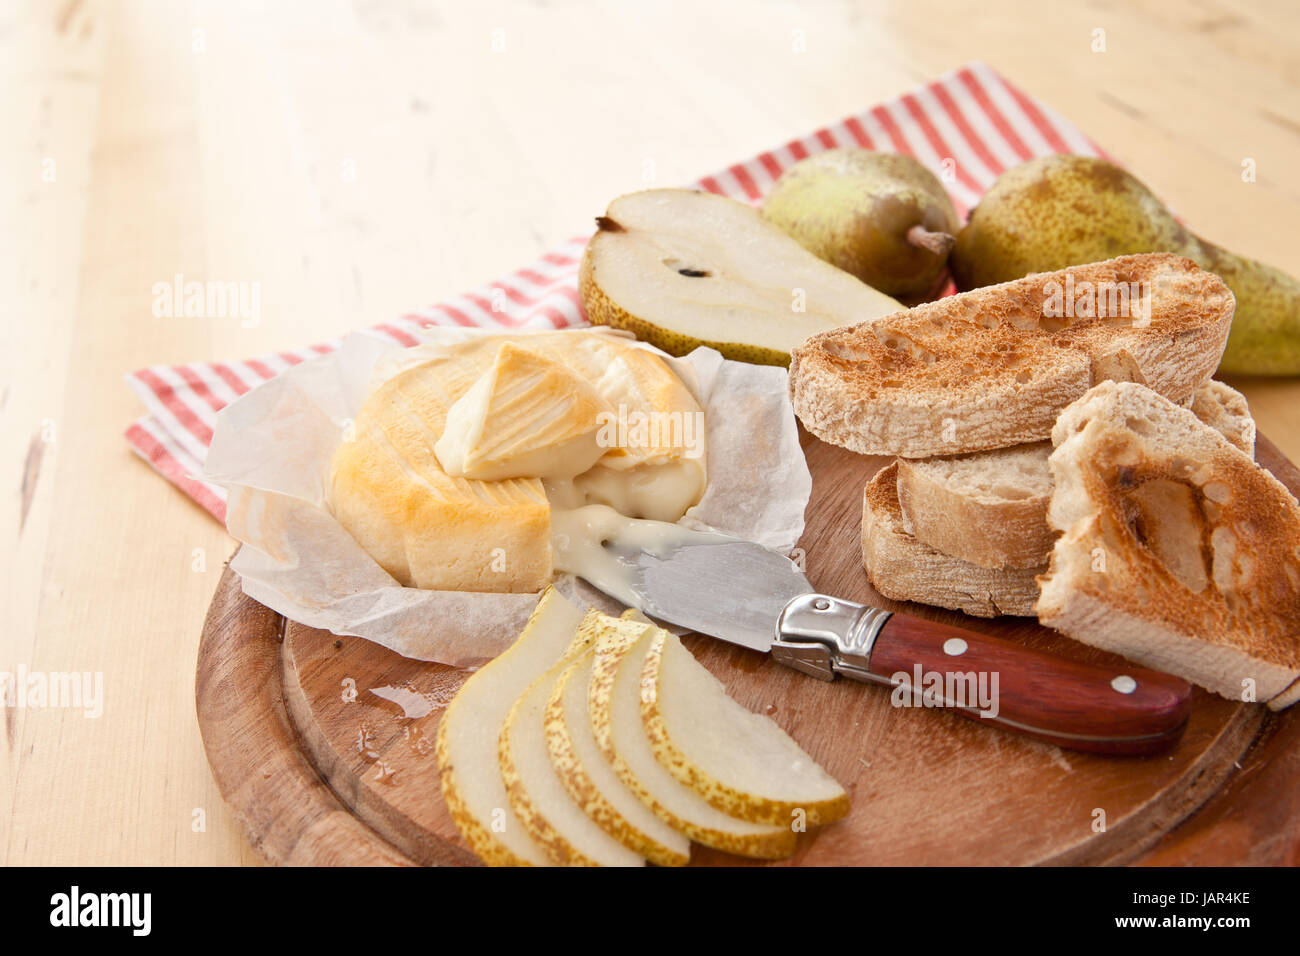 Kaese, Brot und frischen Birnen auf Schneidebrett Foto Stock